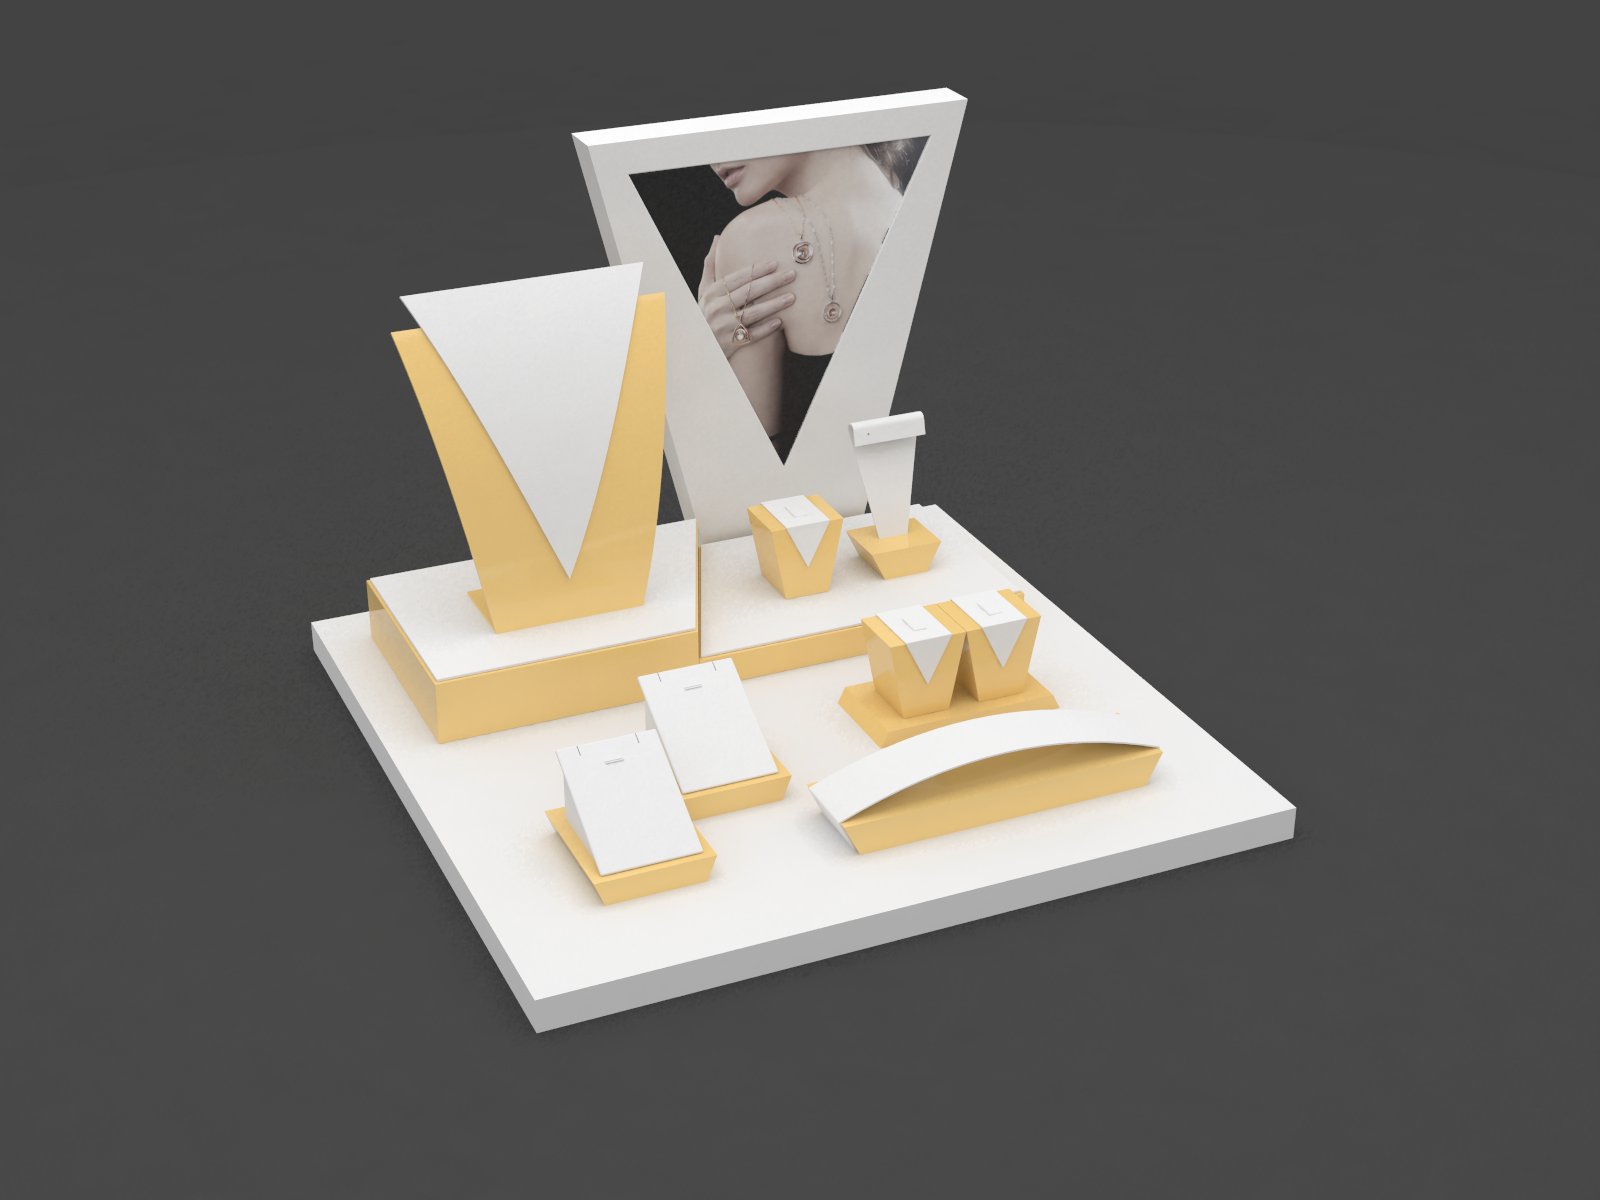 Stile semplice basamento dell'unità di elaborazione dell'esposizione dei monili di cuoio giallo e bianco impostato per la visualizzazione gioielli